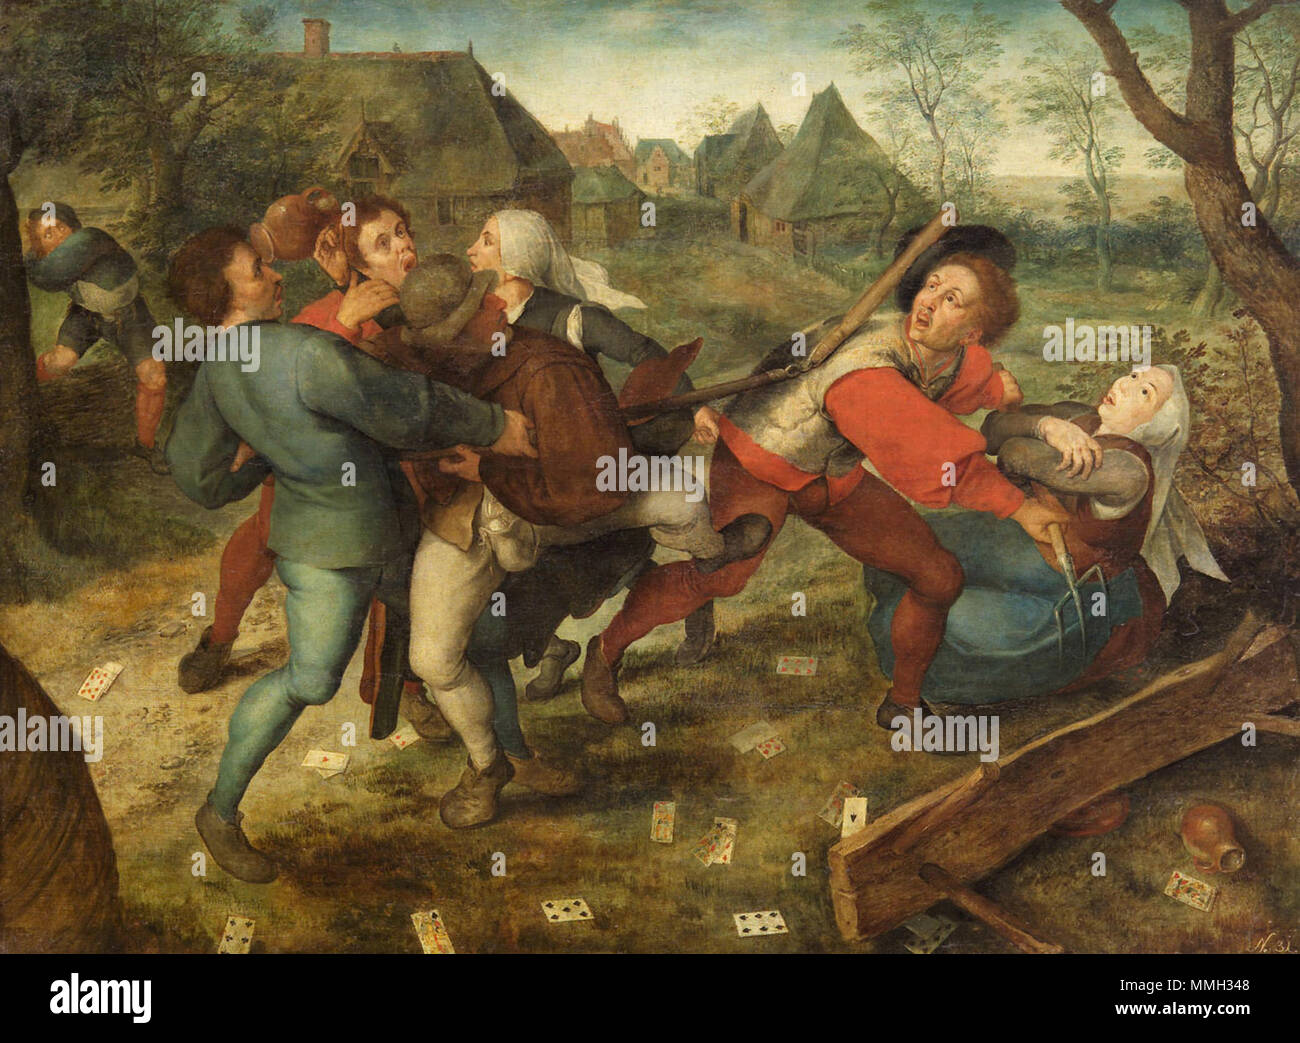 Deutsch : Streitende Bauern beim Kartenspiel . fin du 16e siècle. Cercle de Jan Brueghel l'ancien - lutte entre les paysans jouant aux cartes Banque D'Images